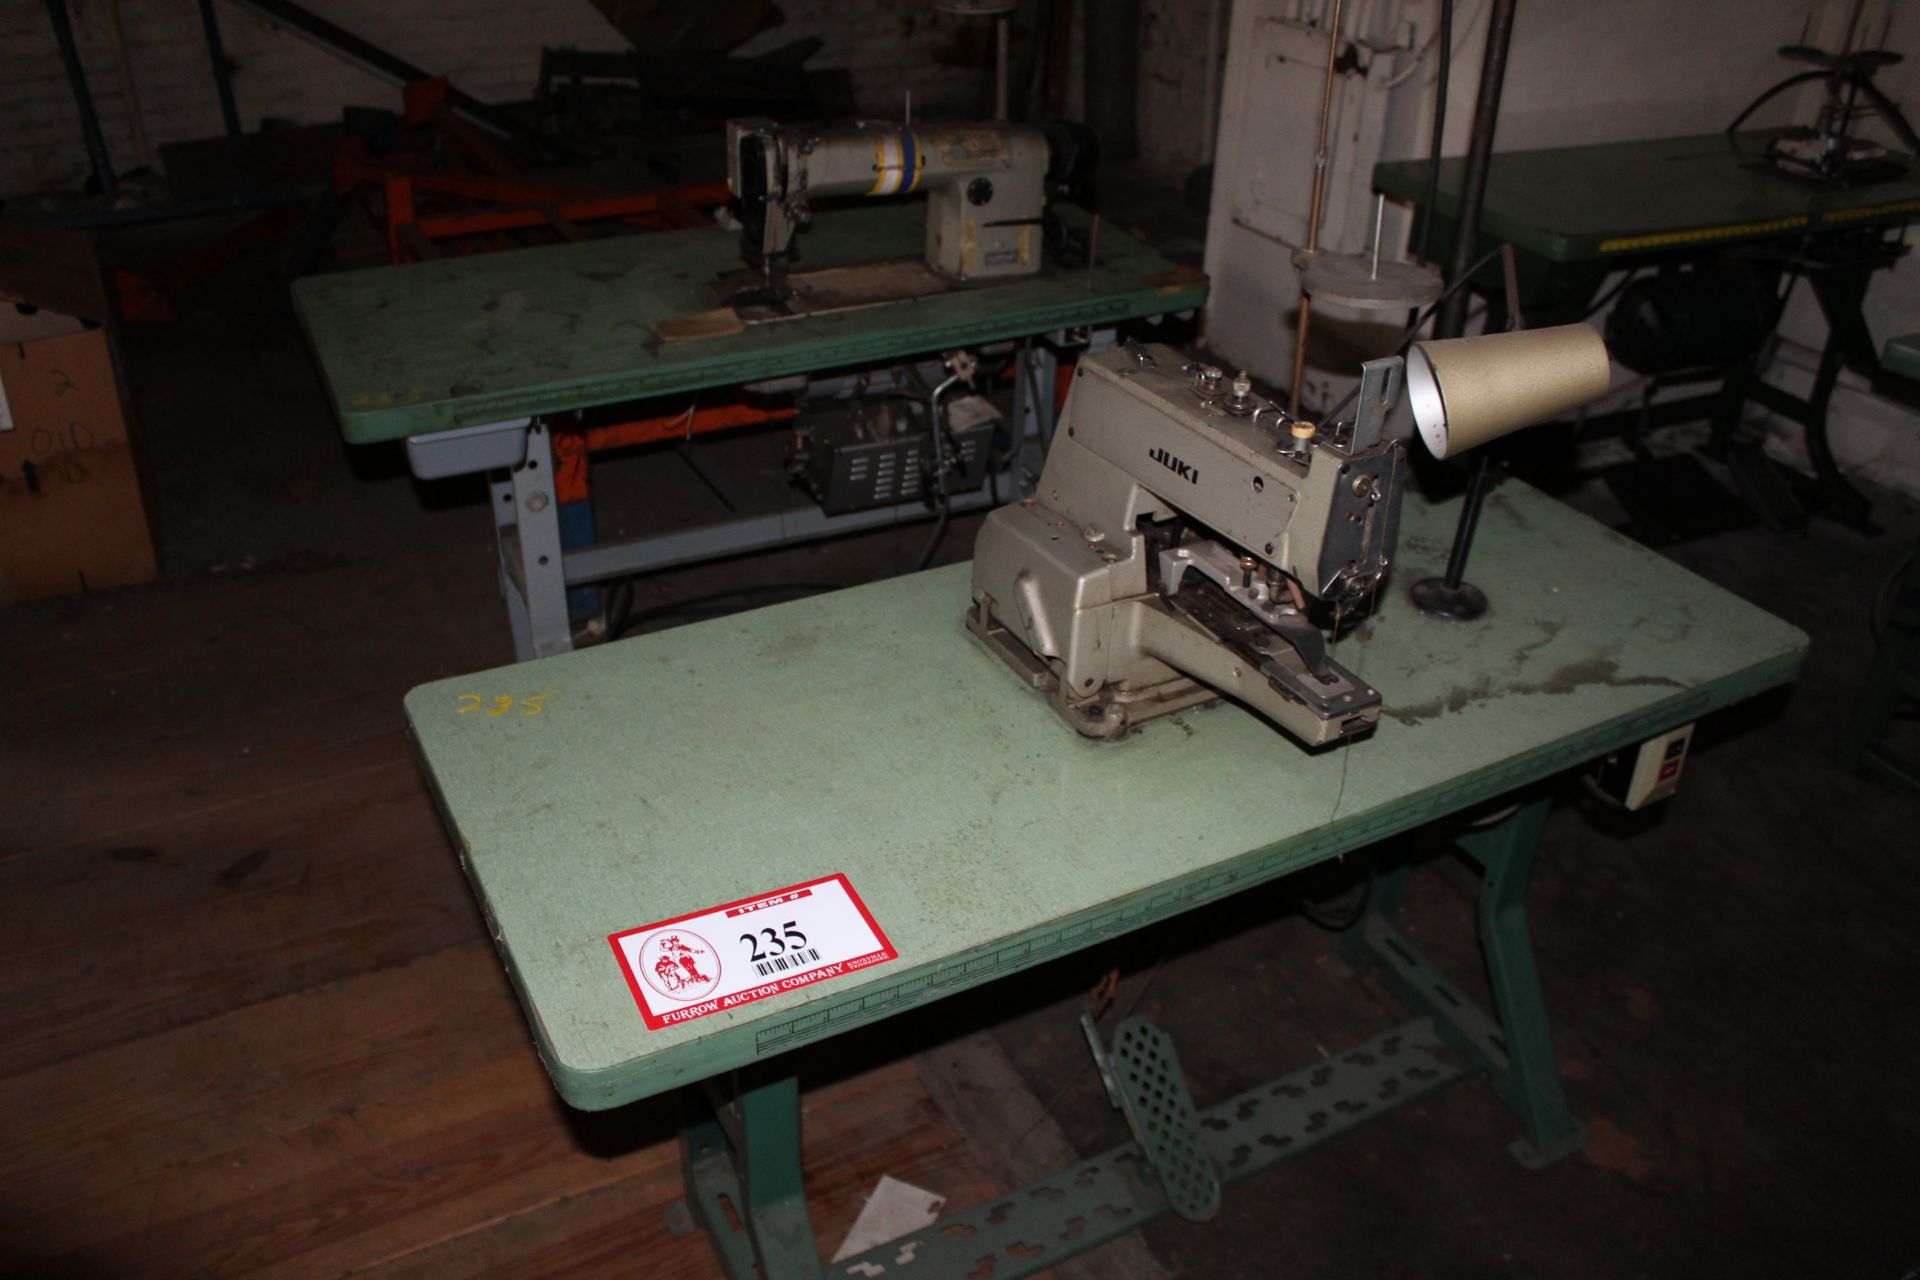 (2) Juki Sewing Machines (1) MB-373 Lock Stitch and (1) DDL-555-4 Single Needle